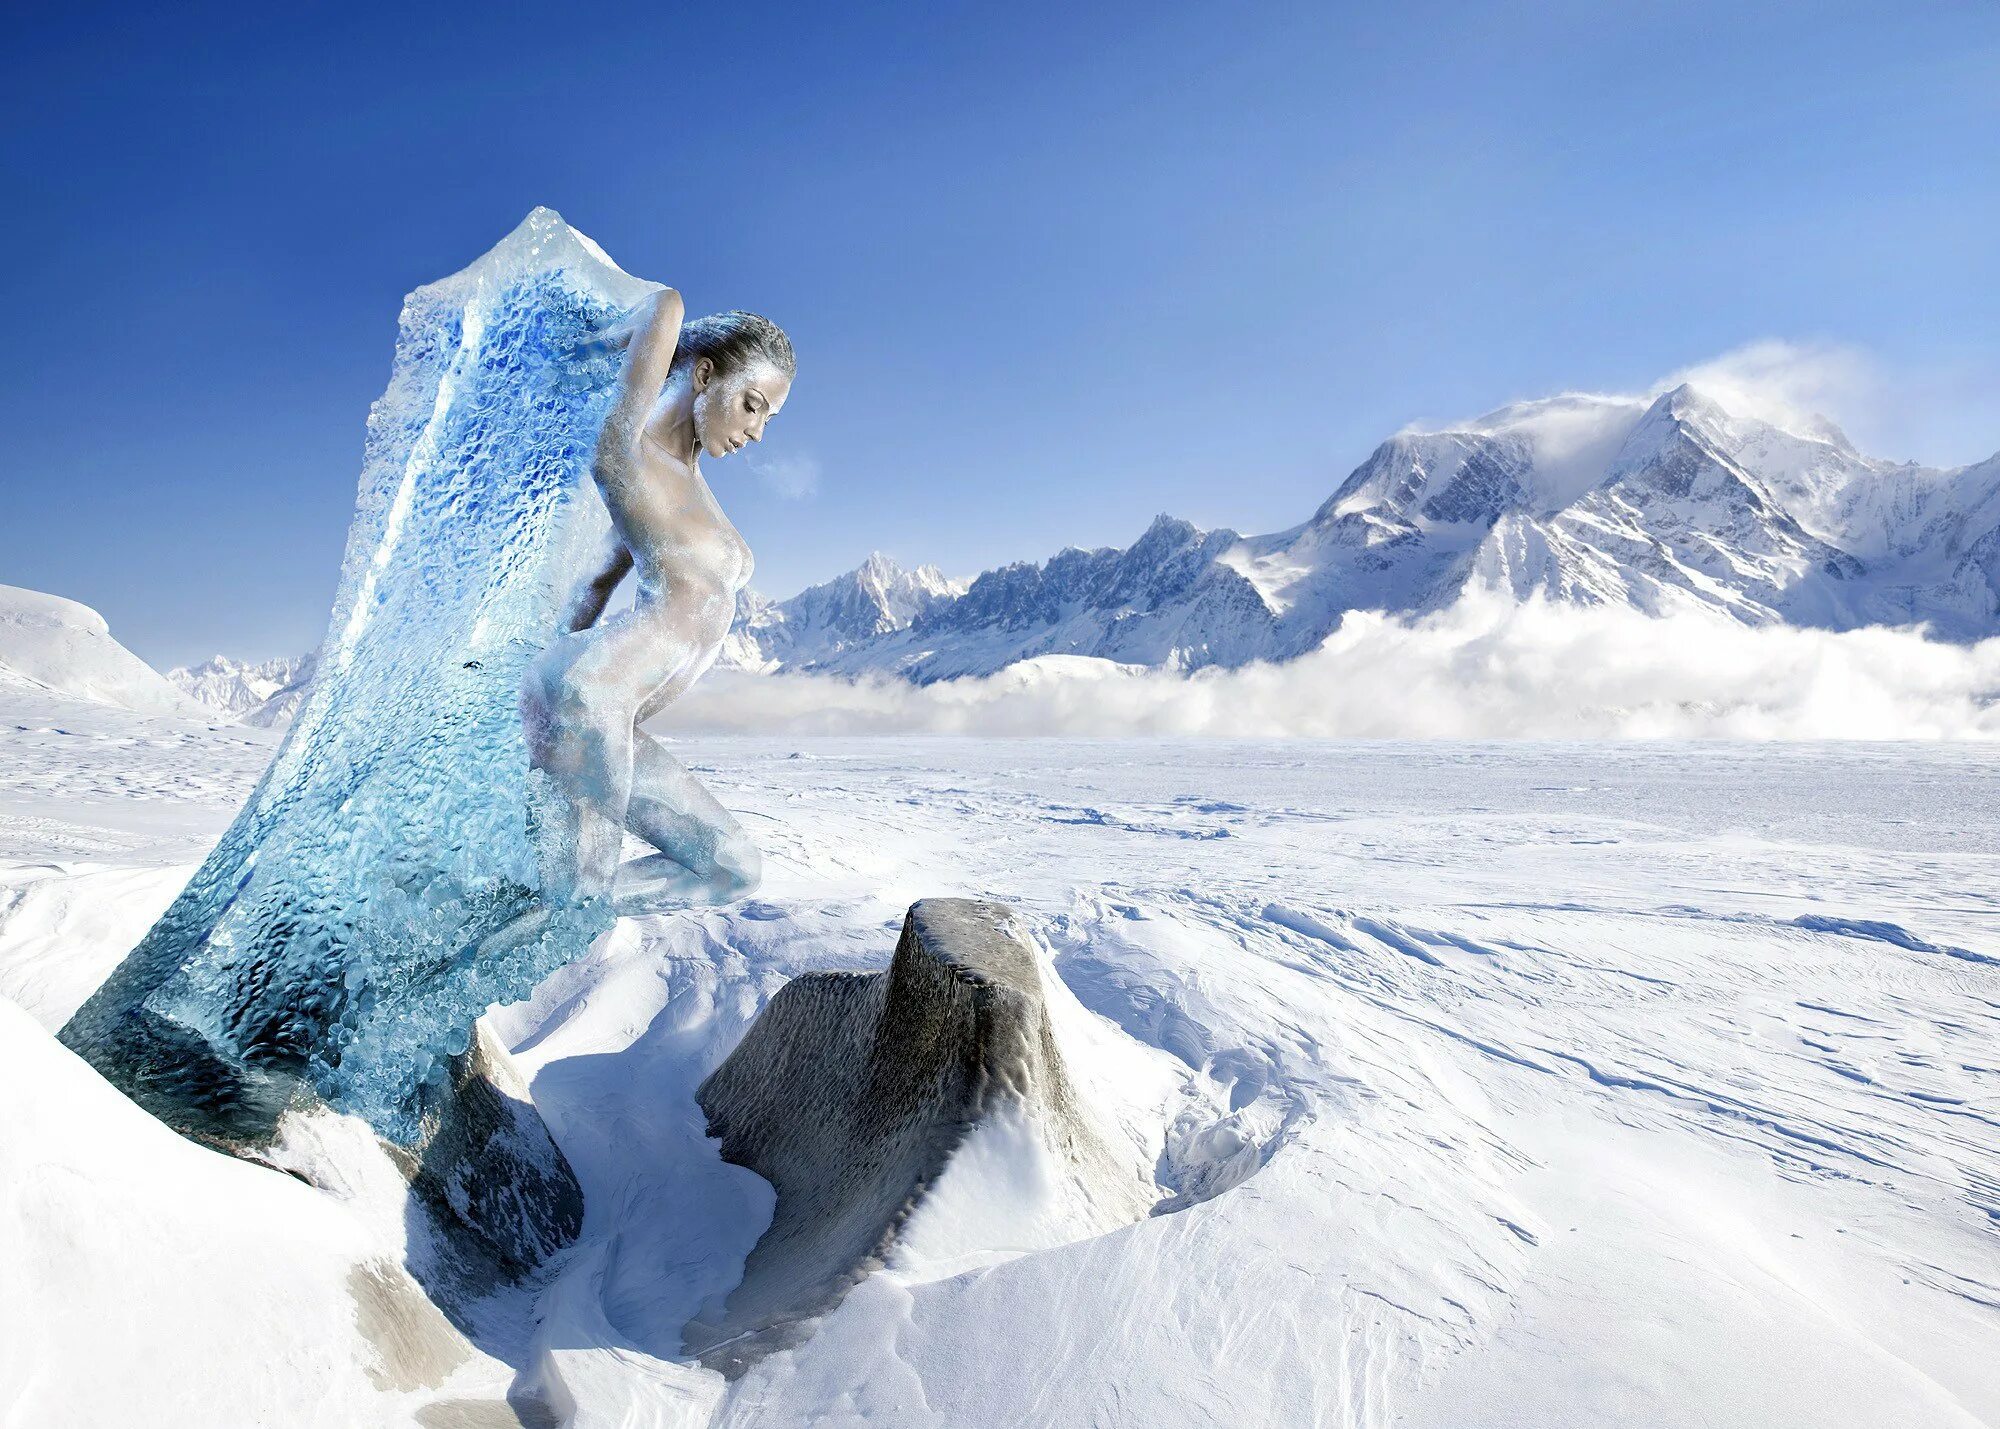 Cold and snowy. Девушка в снежных горах. Девушка во льду. Фотосессия в горах зимой. Девушка в горах зима.